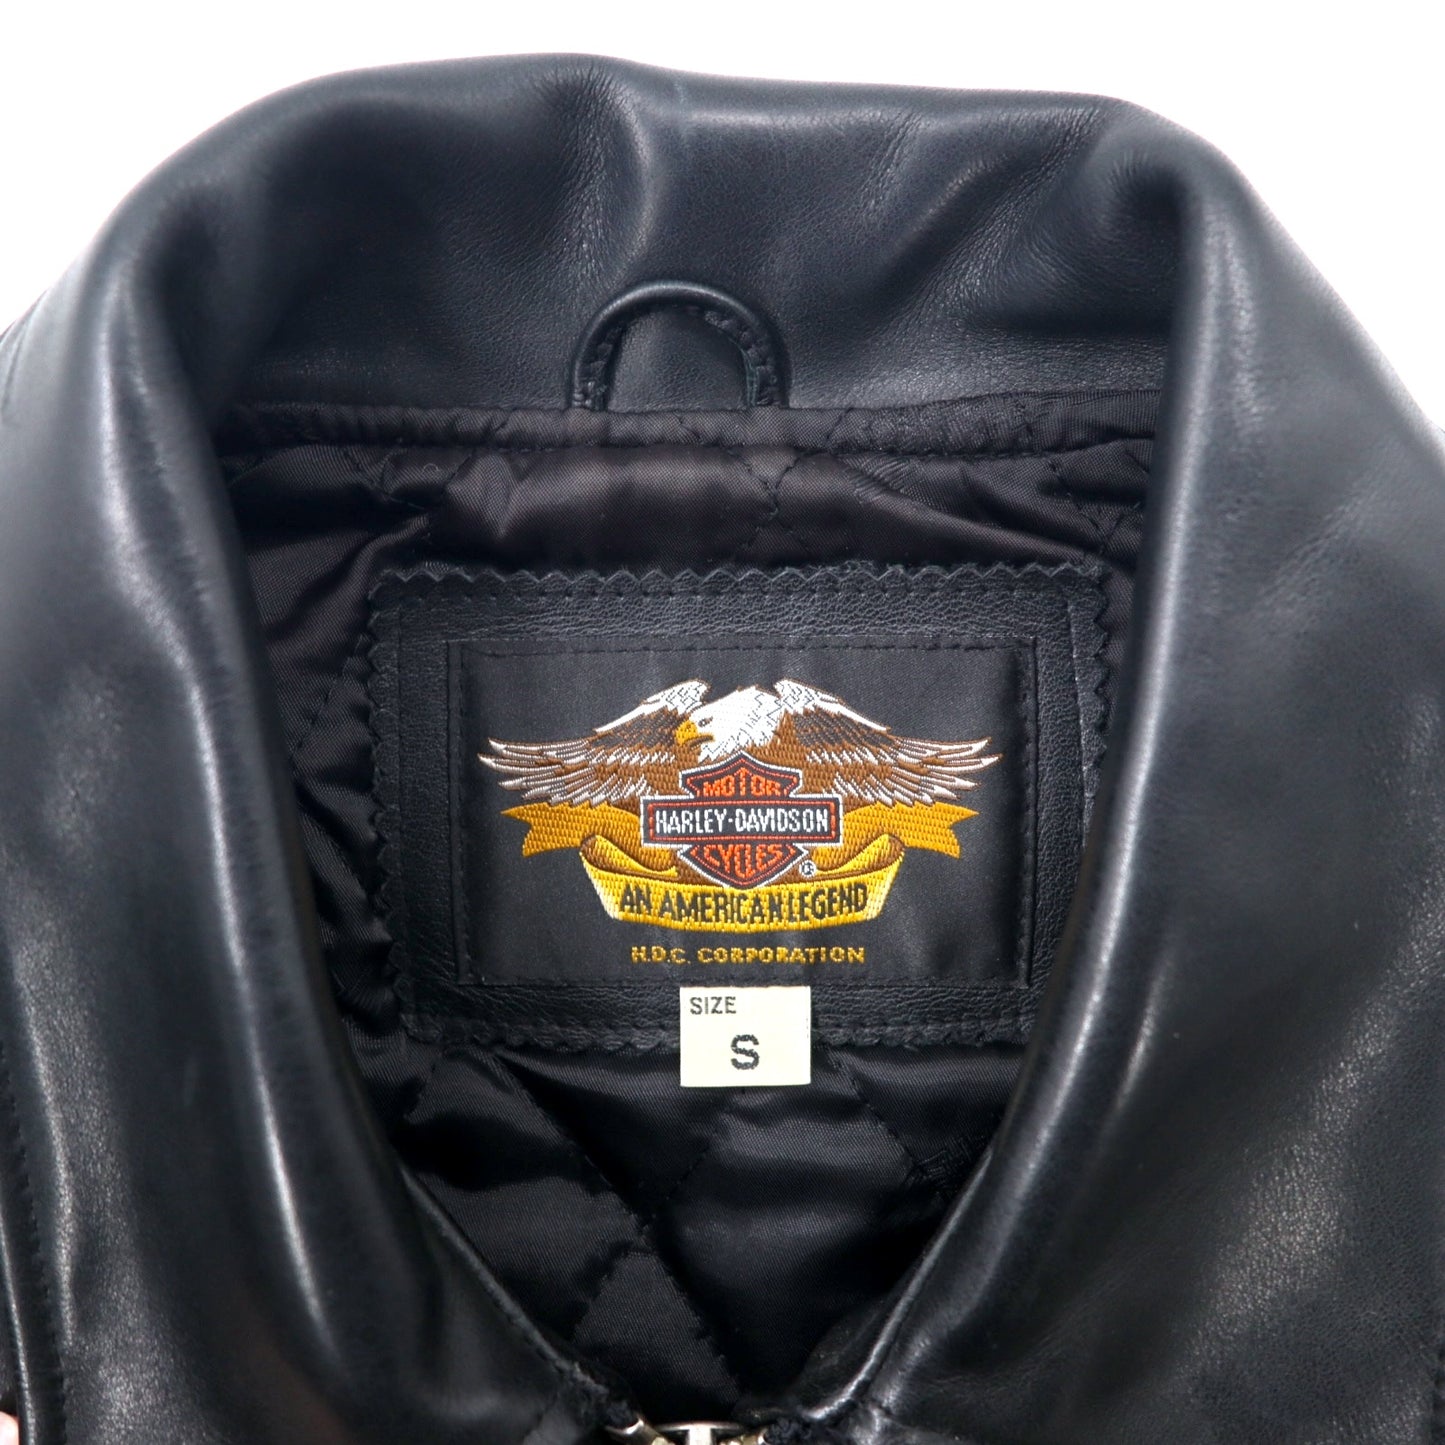 HARLEY DAVIDSON Single Riders Jacket Leather Jacket S Black ...